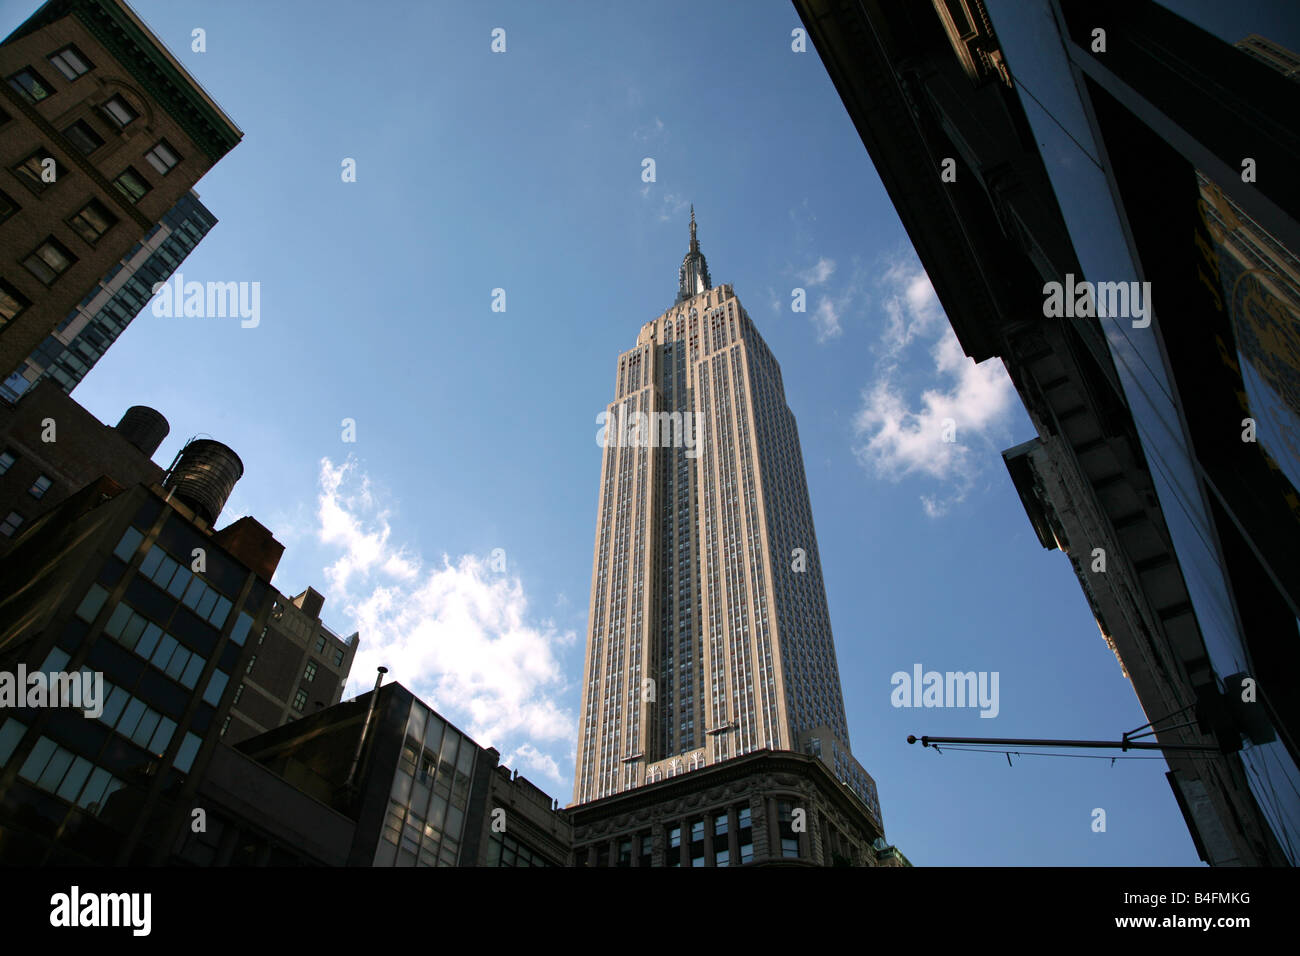 Empire State Building se lever au-dessus de la partie inférieure des bâtiments de Midtown, New York, NY, USA Banque D'Images